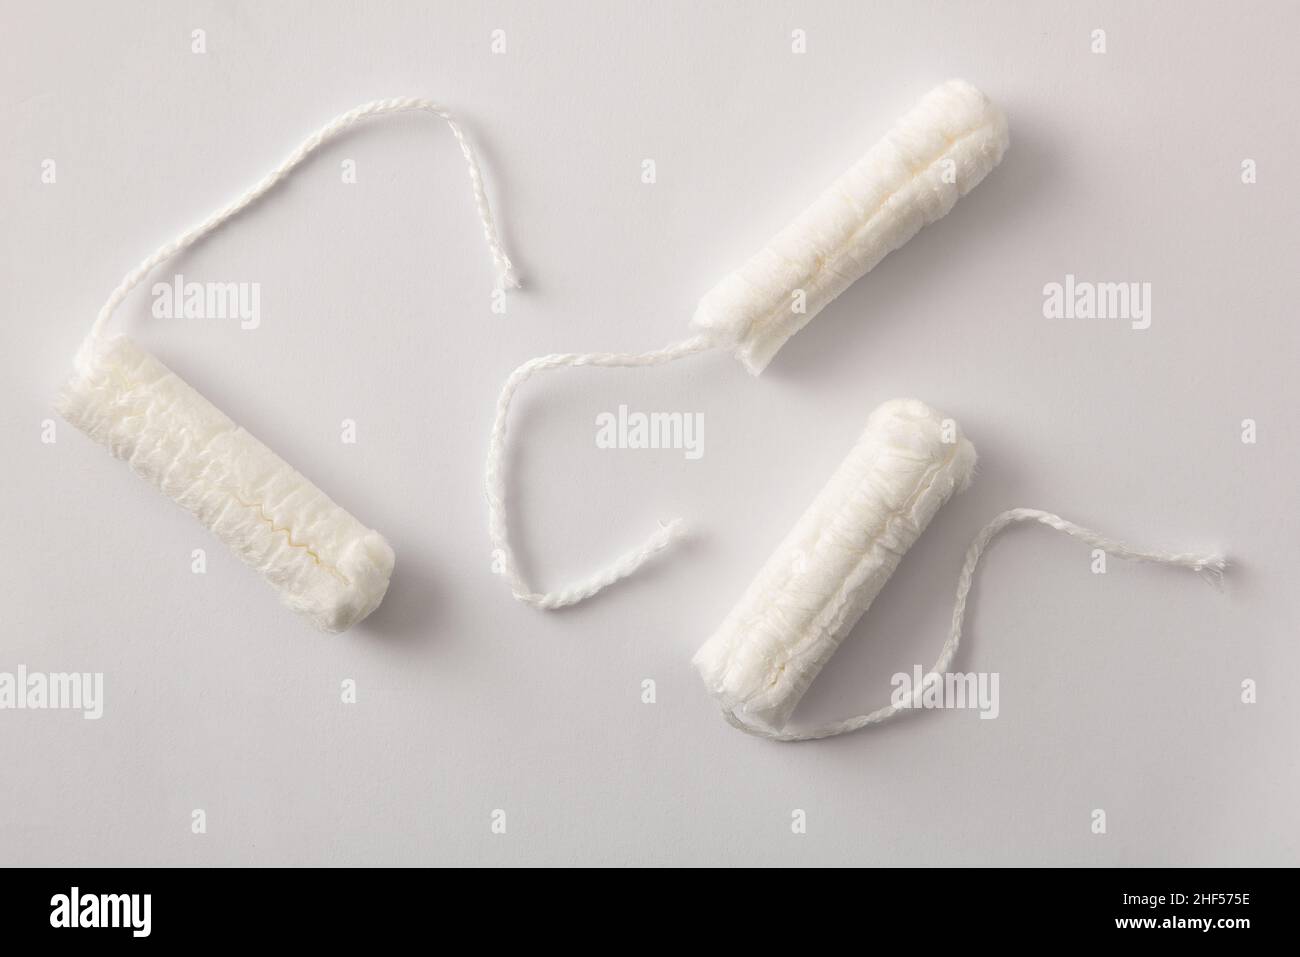 Drei weiche, schützende und saugfähige Tampons aus Baumwolle für die Damenpflege auf weißem Hintergrund. Draufsicht. Horizontale Zusammensetzung. Stockfoto